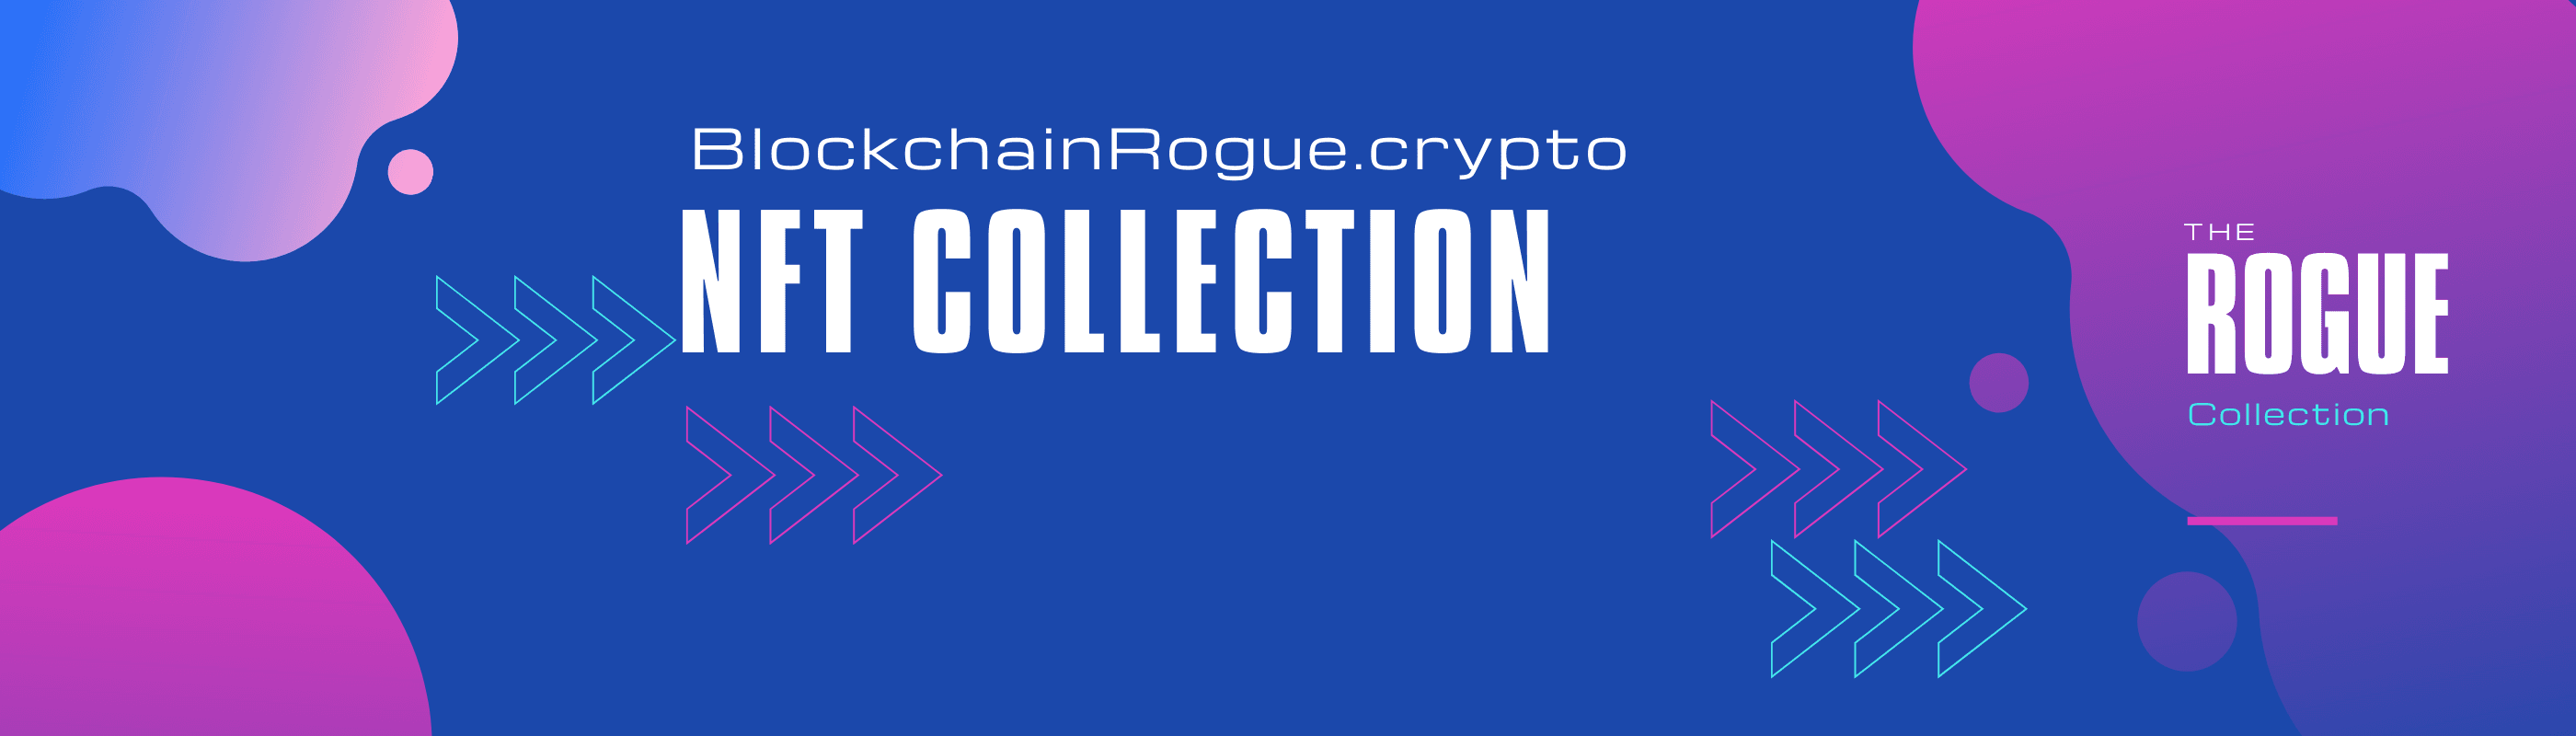 BlockchainRogue banner